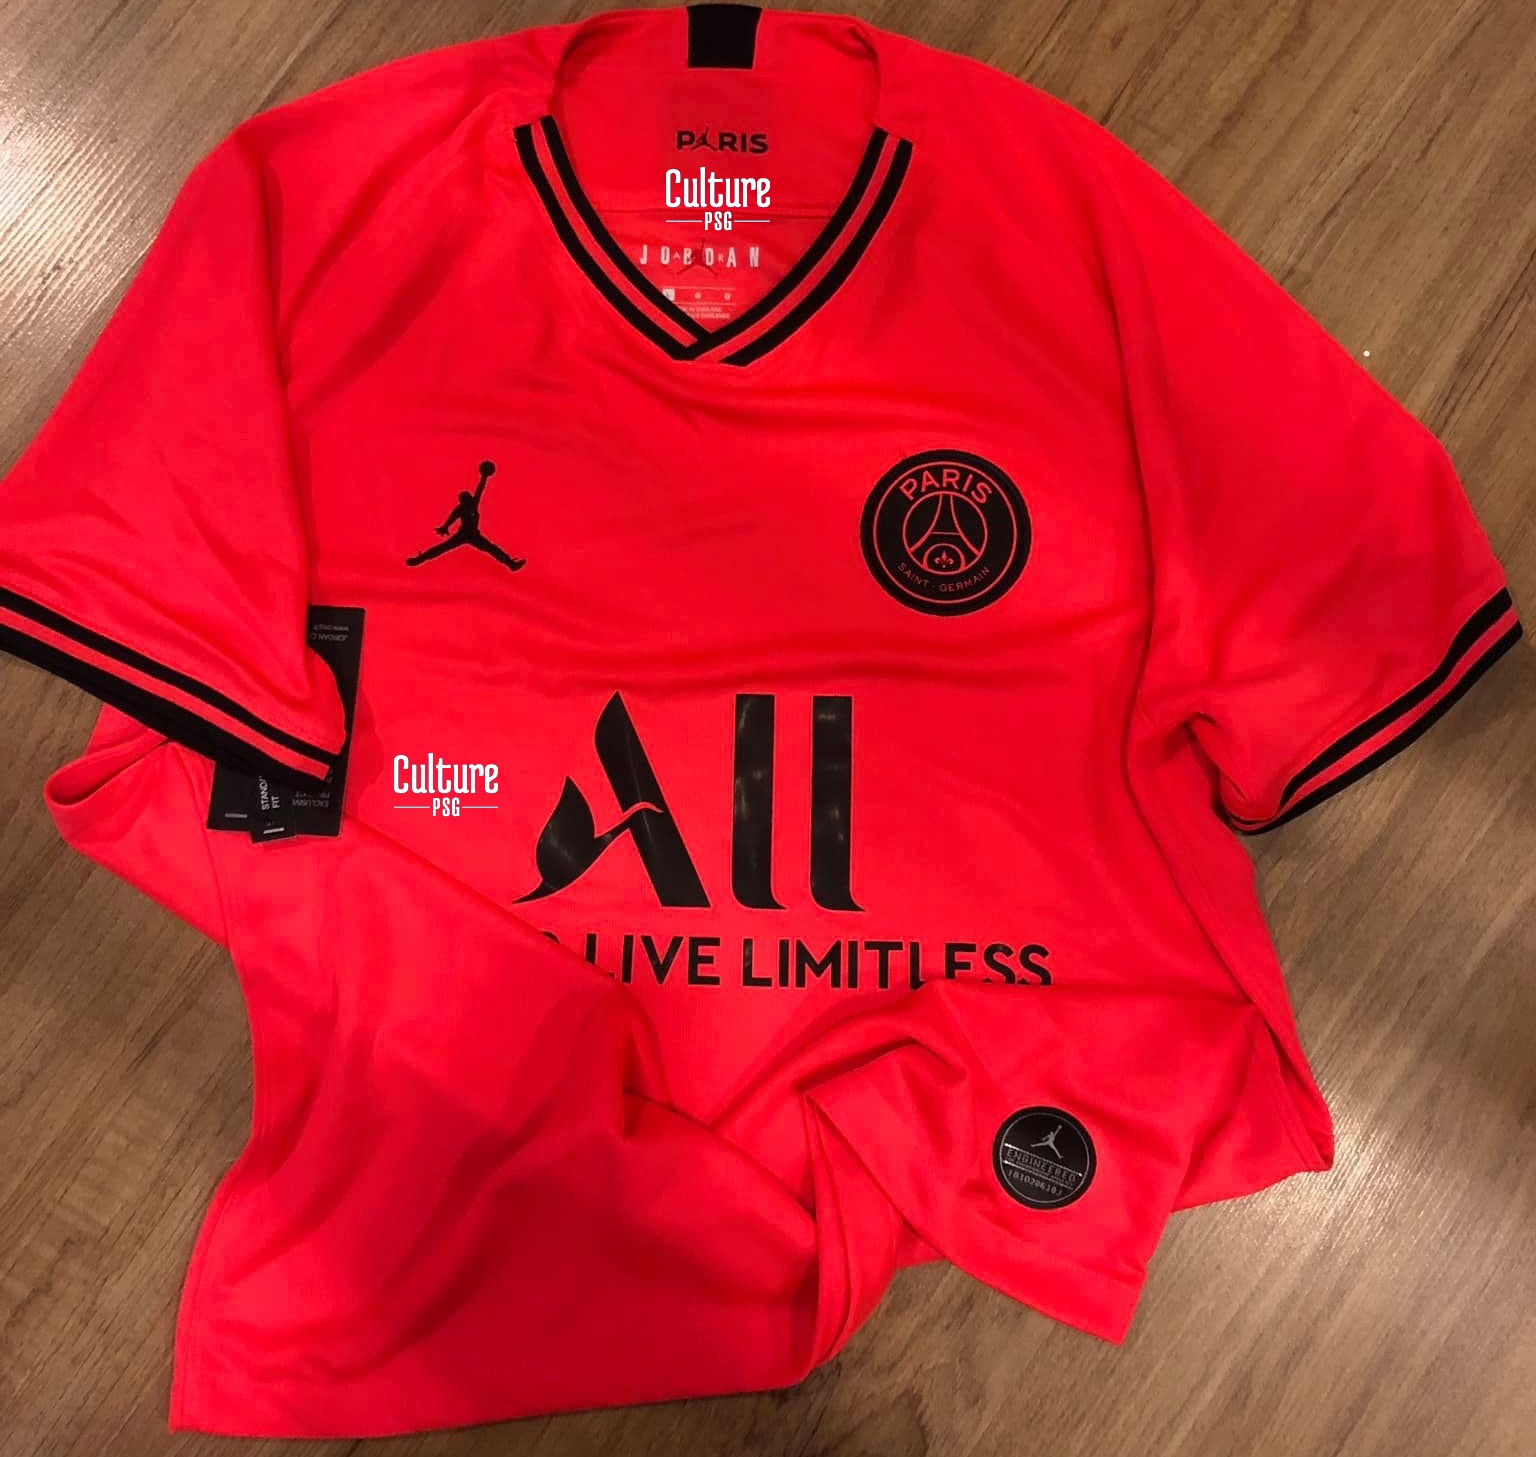 nouveau maillot de foot exterieur PSG 2019 2020 rouge